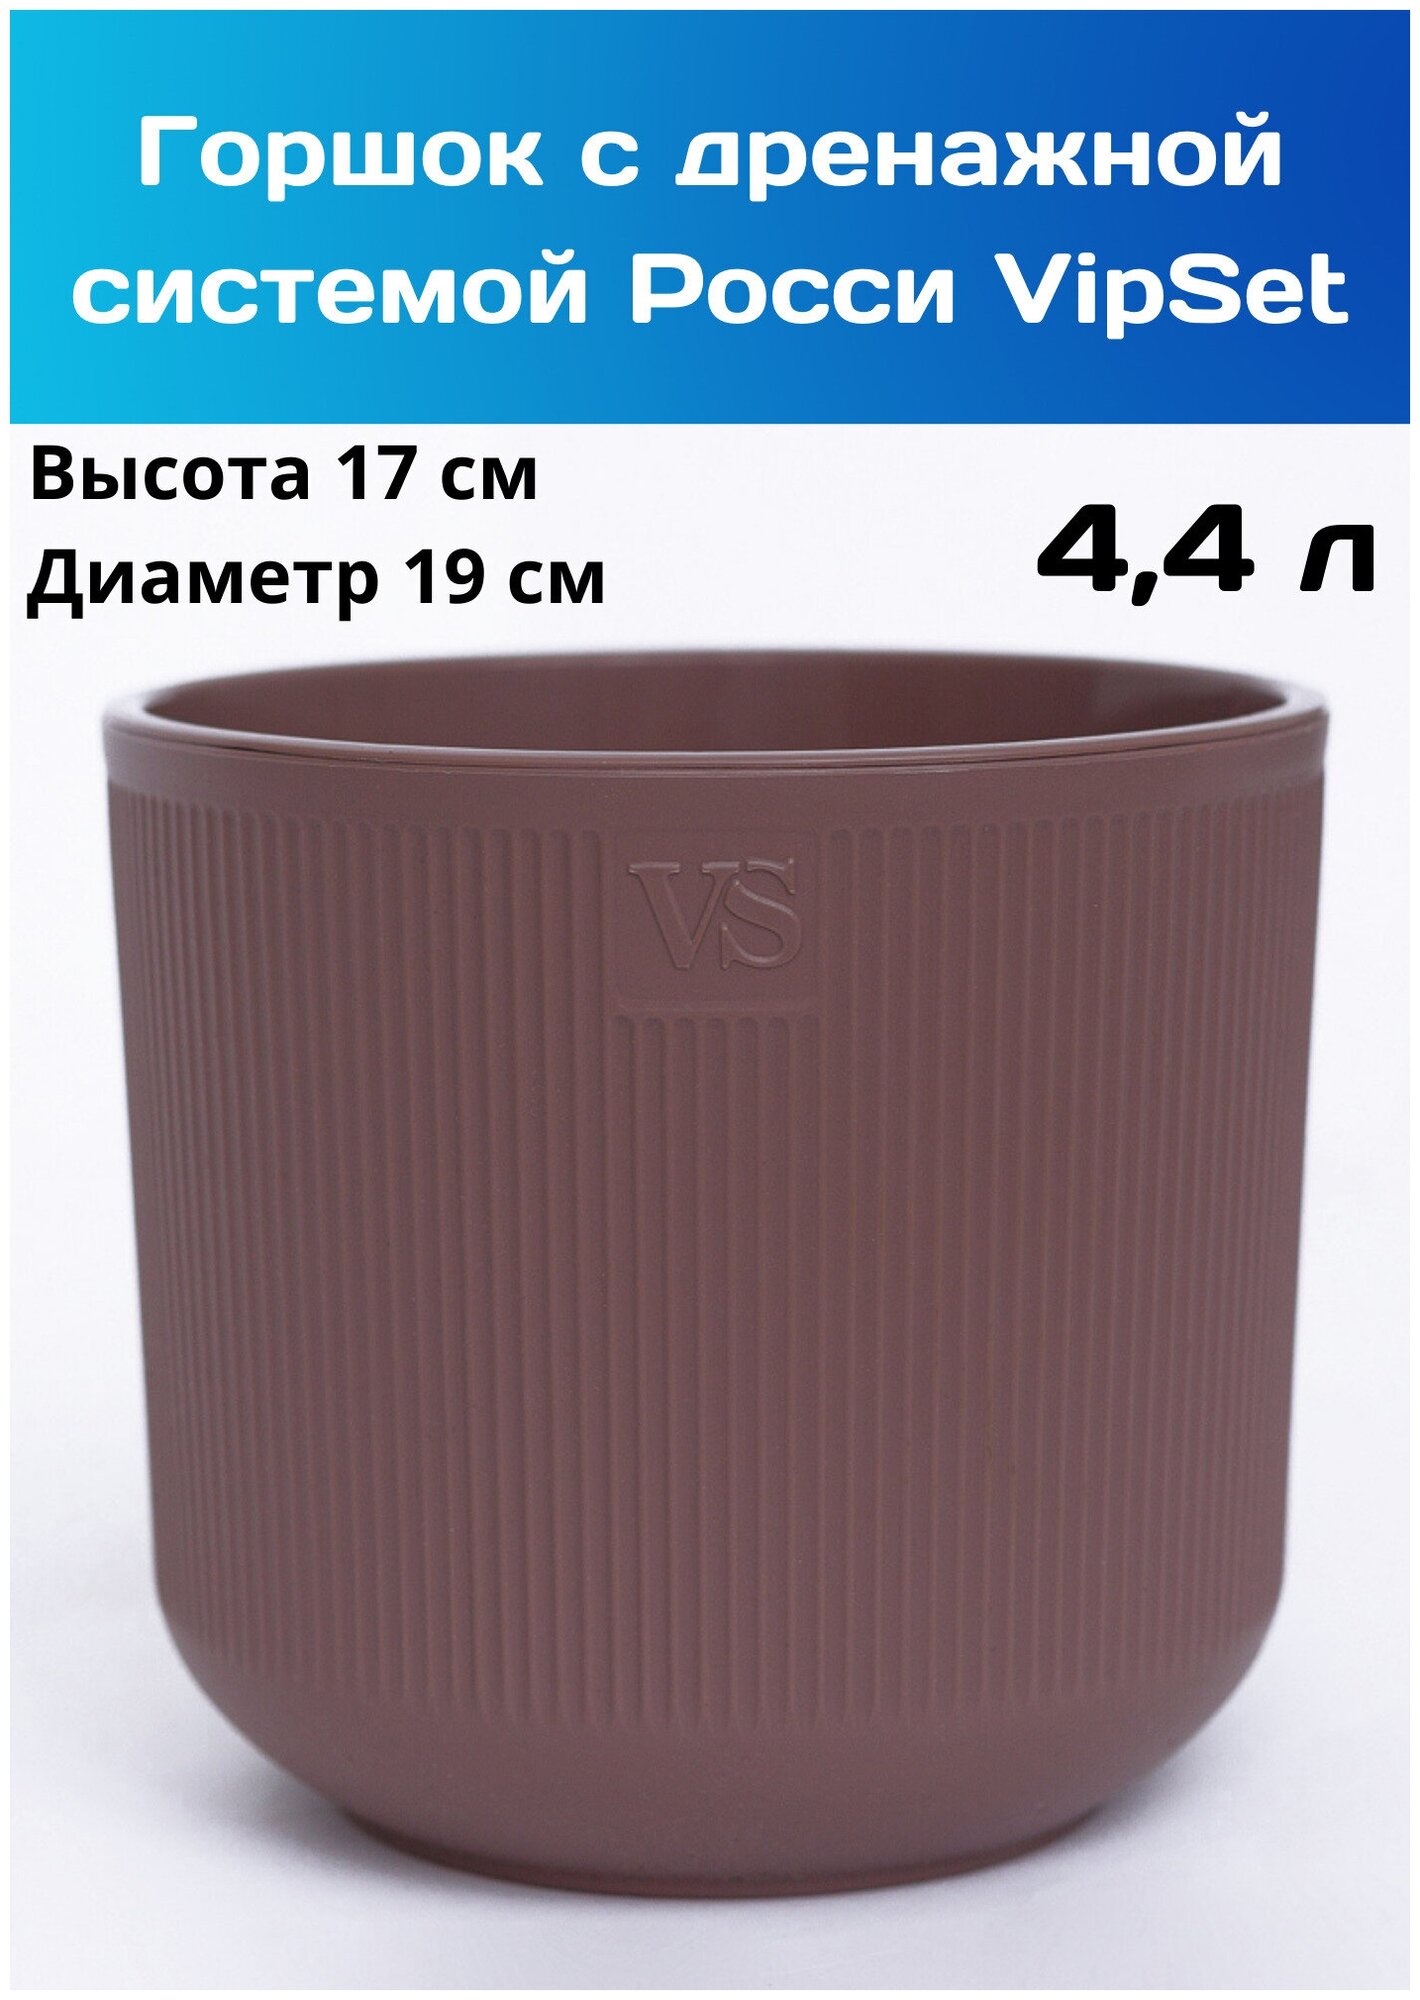 Кашпо для цветов Росси VipSet 4.4 л, цвет инжир